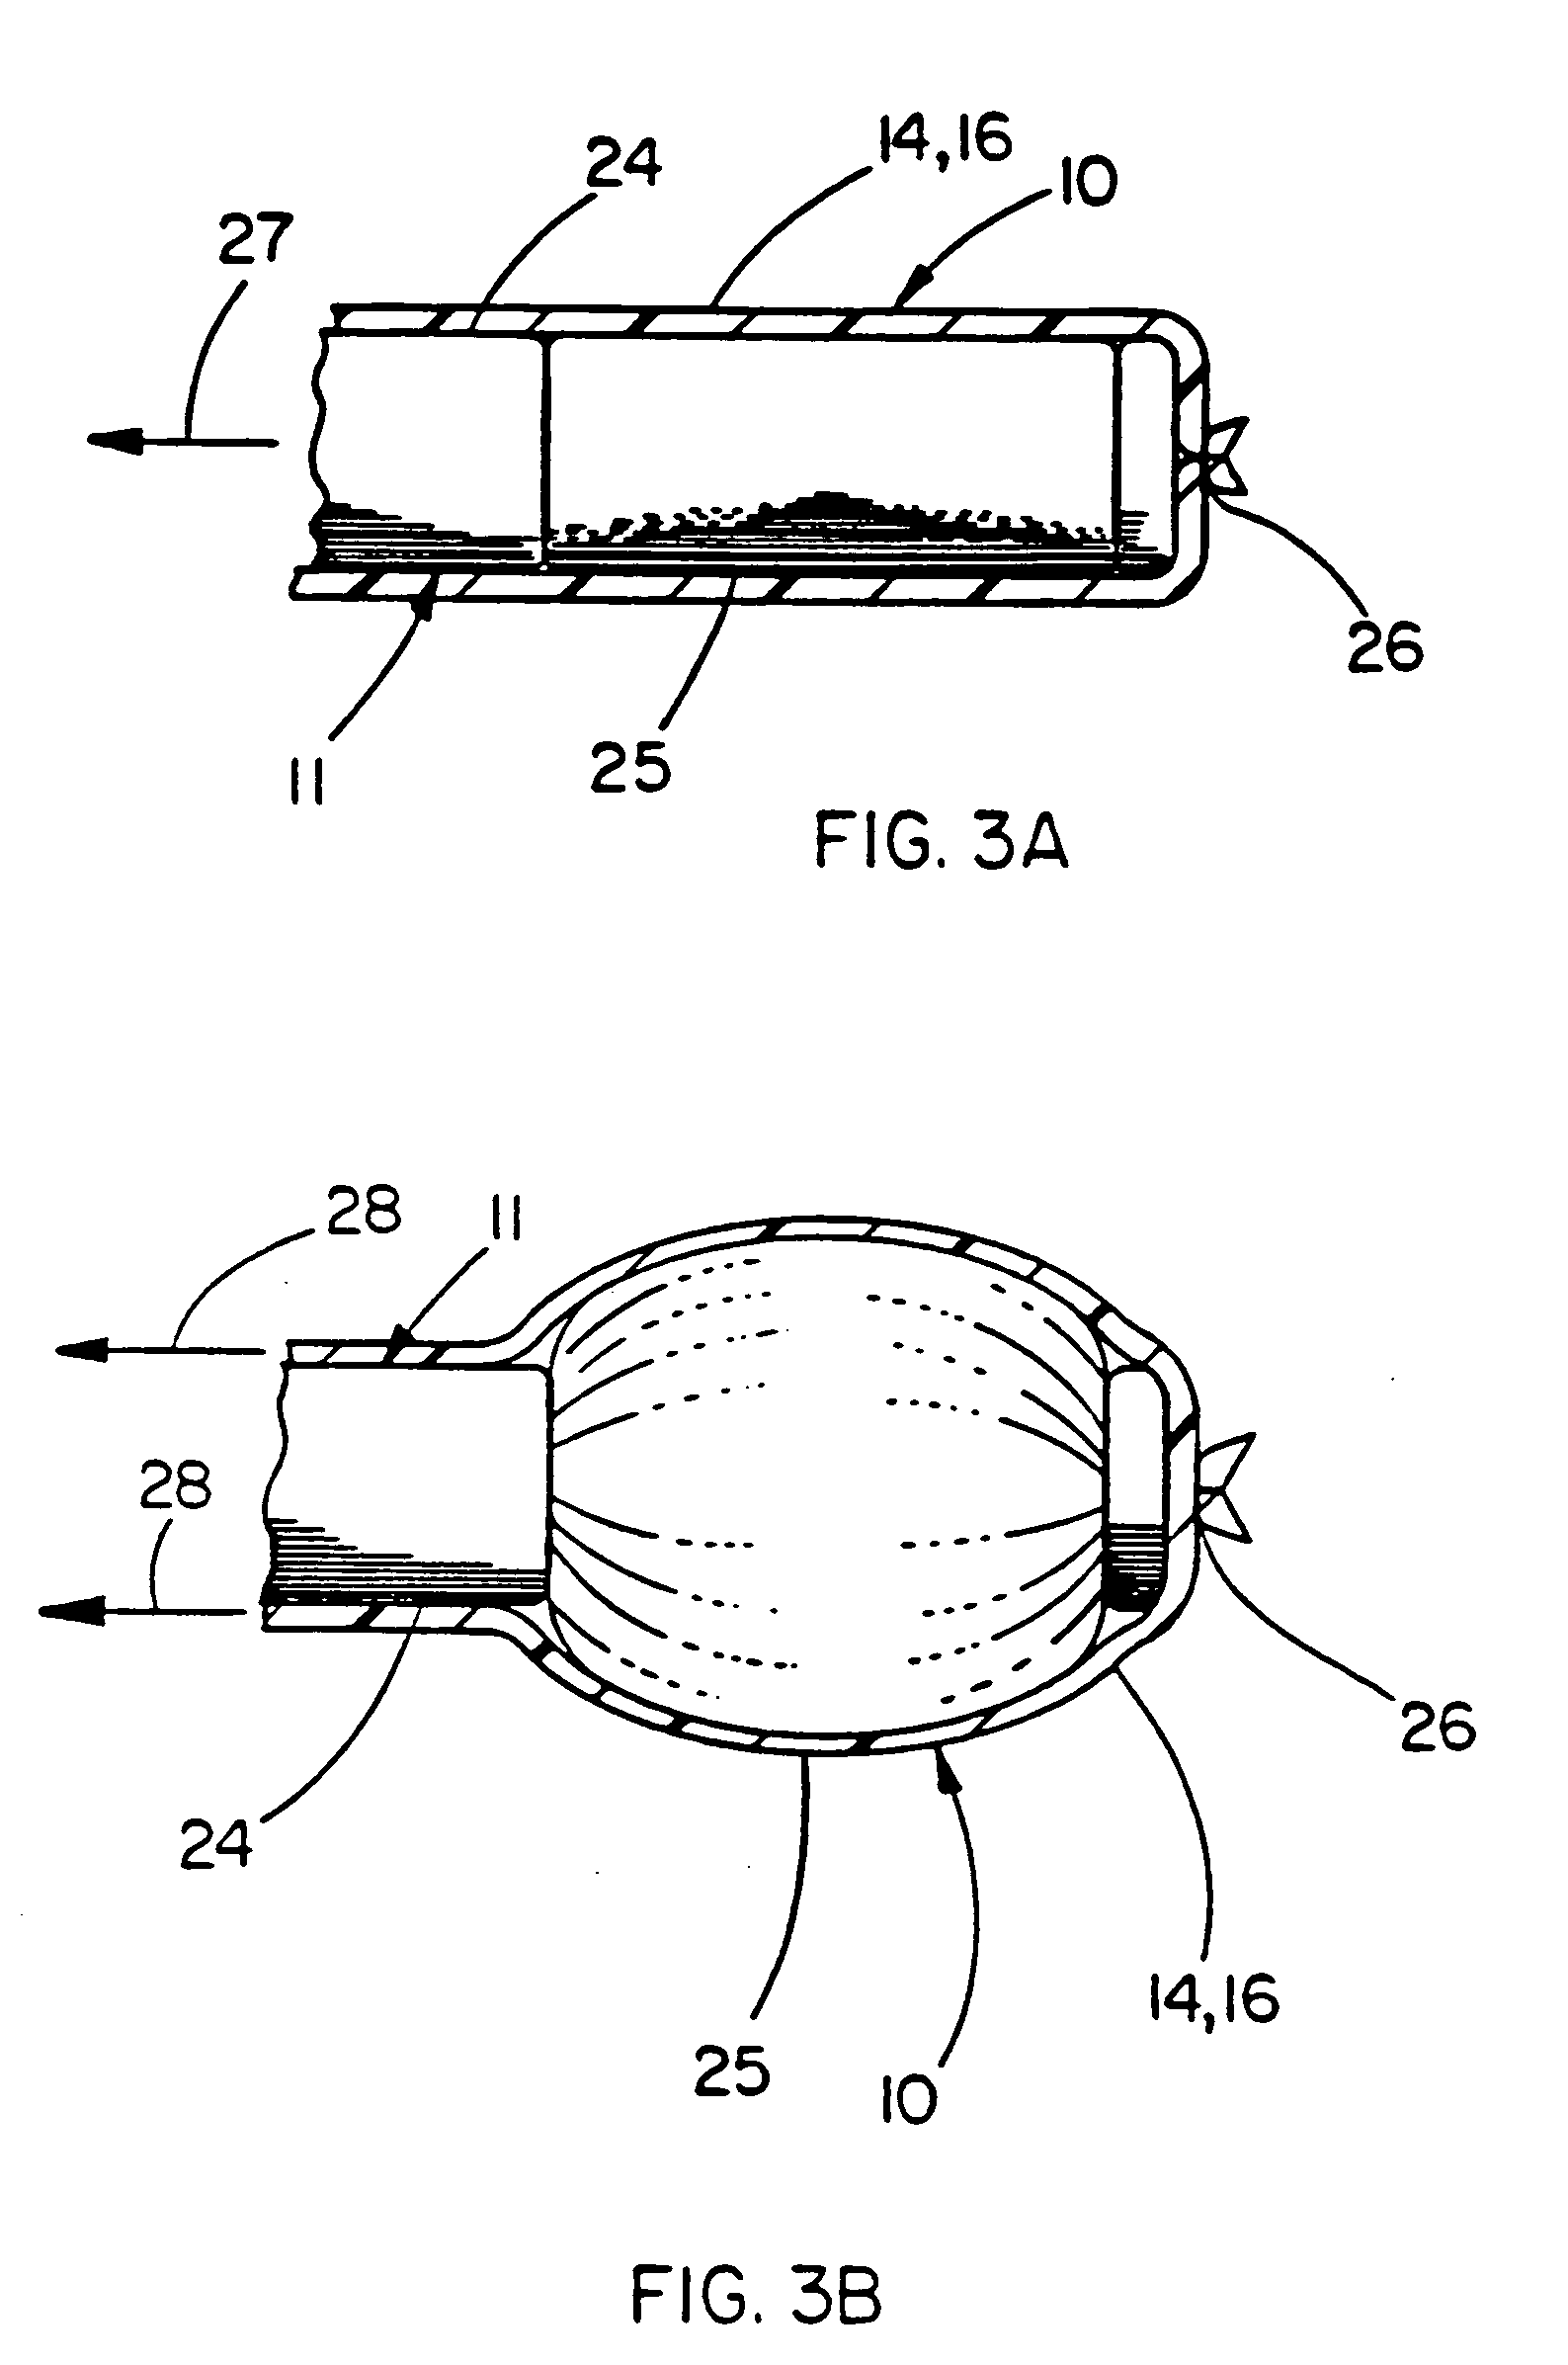 Balloon catheter device